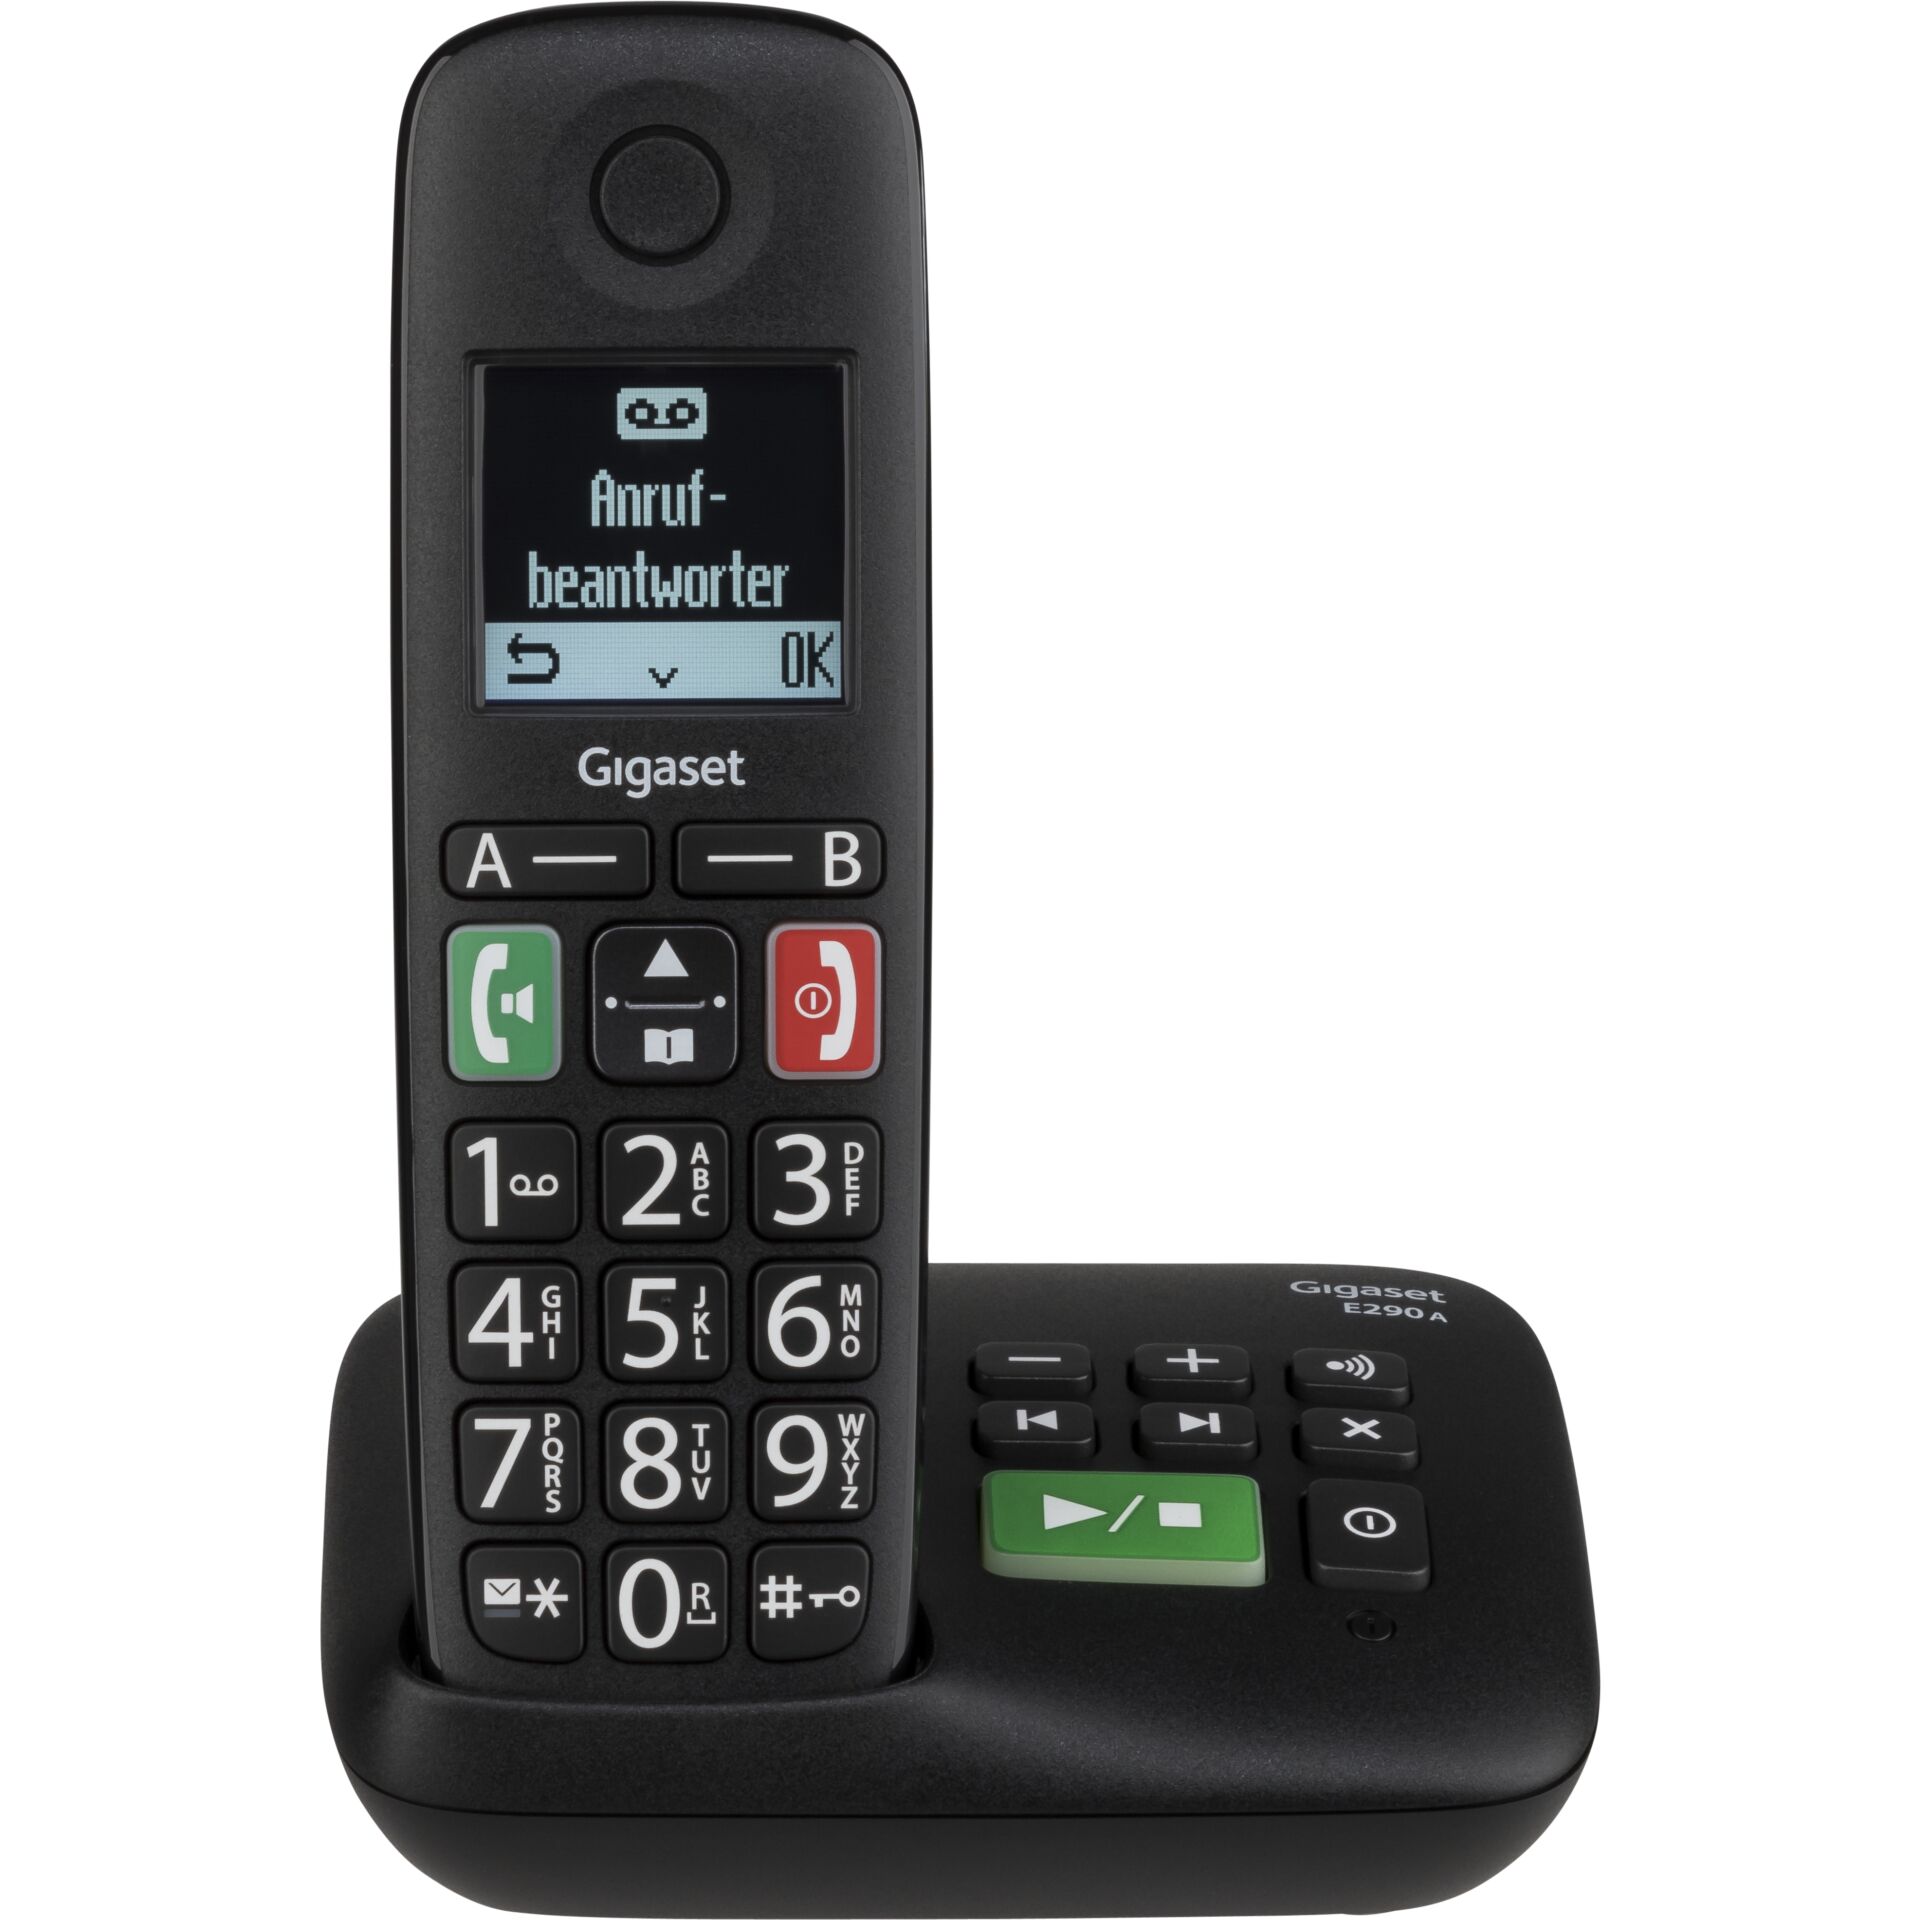 Rufnummernanzeige mit Gigaset -Schwarz DECTGAP -ECO Accessories -Gigaset -Anrufbeantworter -E290A (S30852-H2921-B101) -Schnurlostelefon